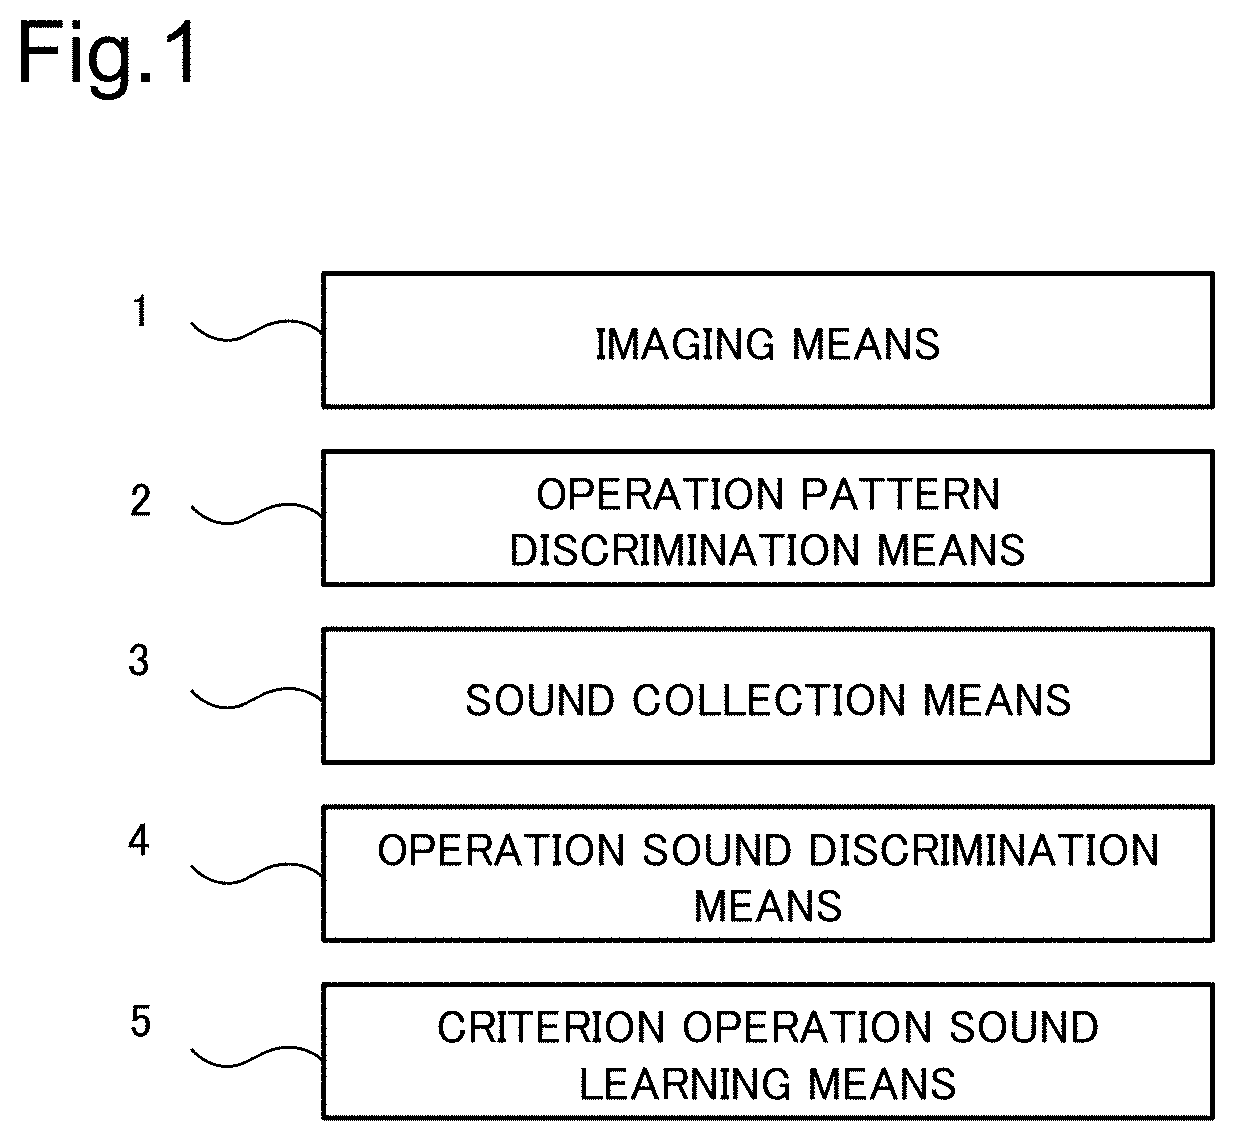 Abnormal-sound determination criterion generation device,  abnormal-sound criterion generation method, abnormal-sound sensing device, and storage medium